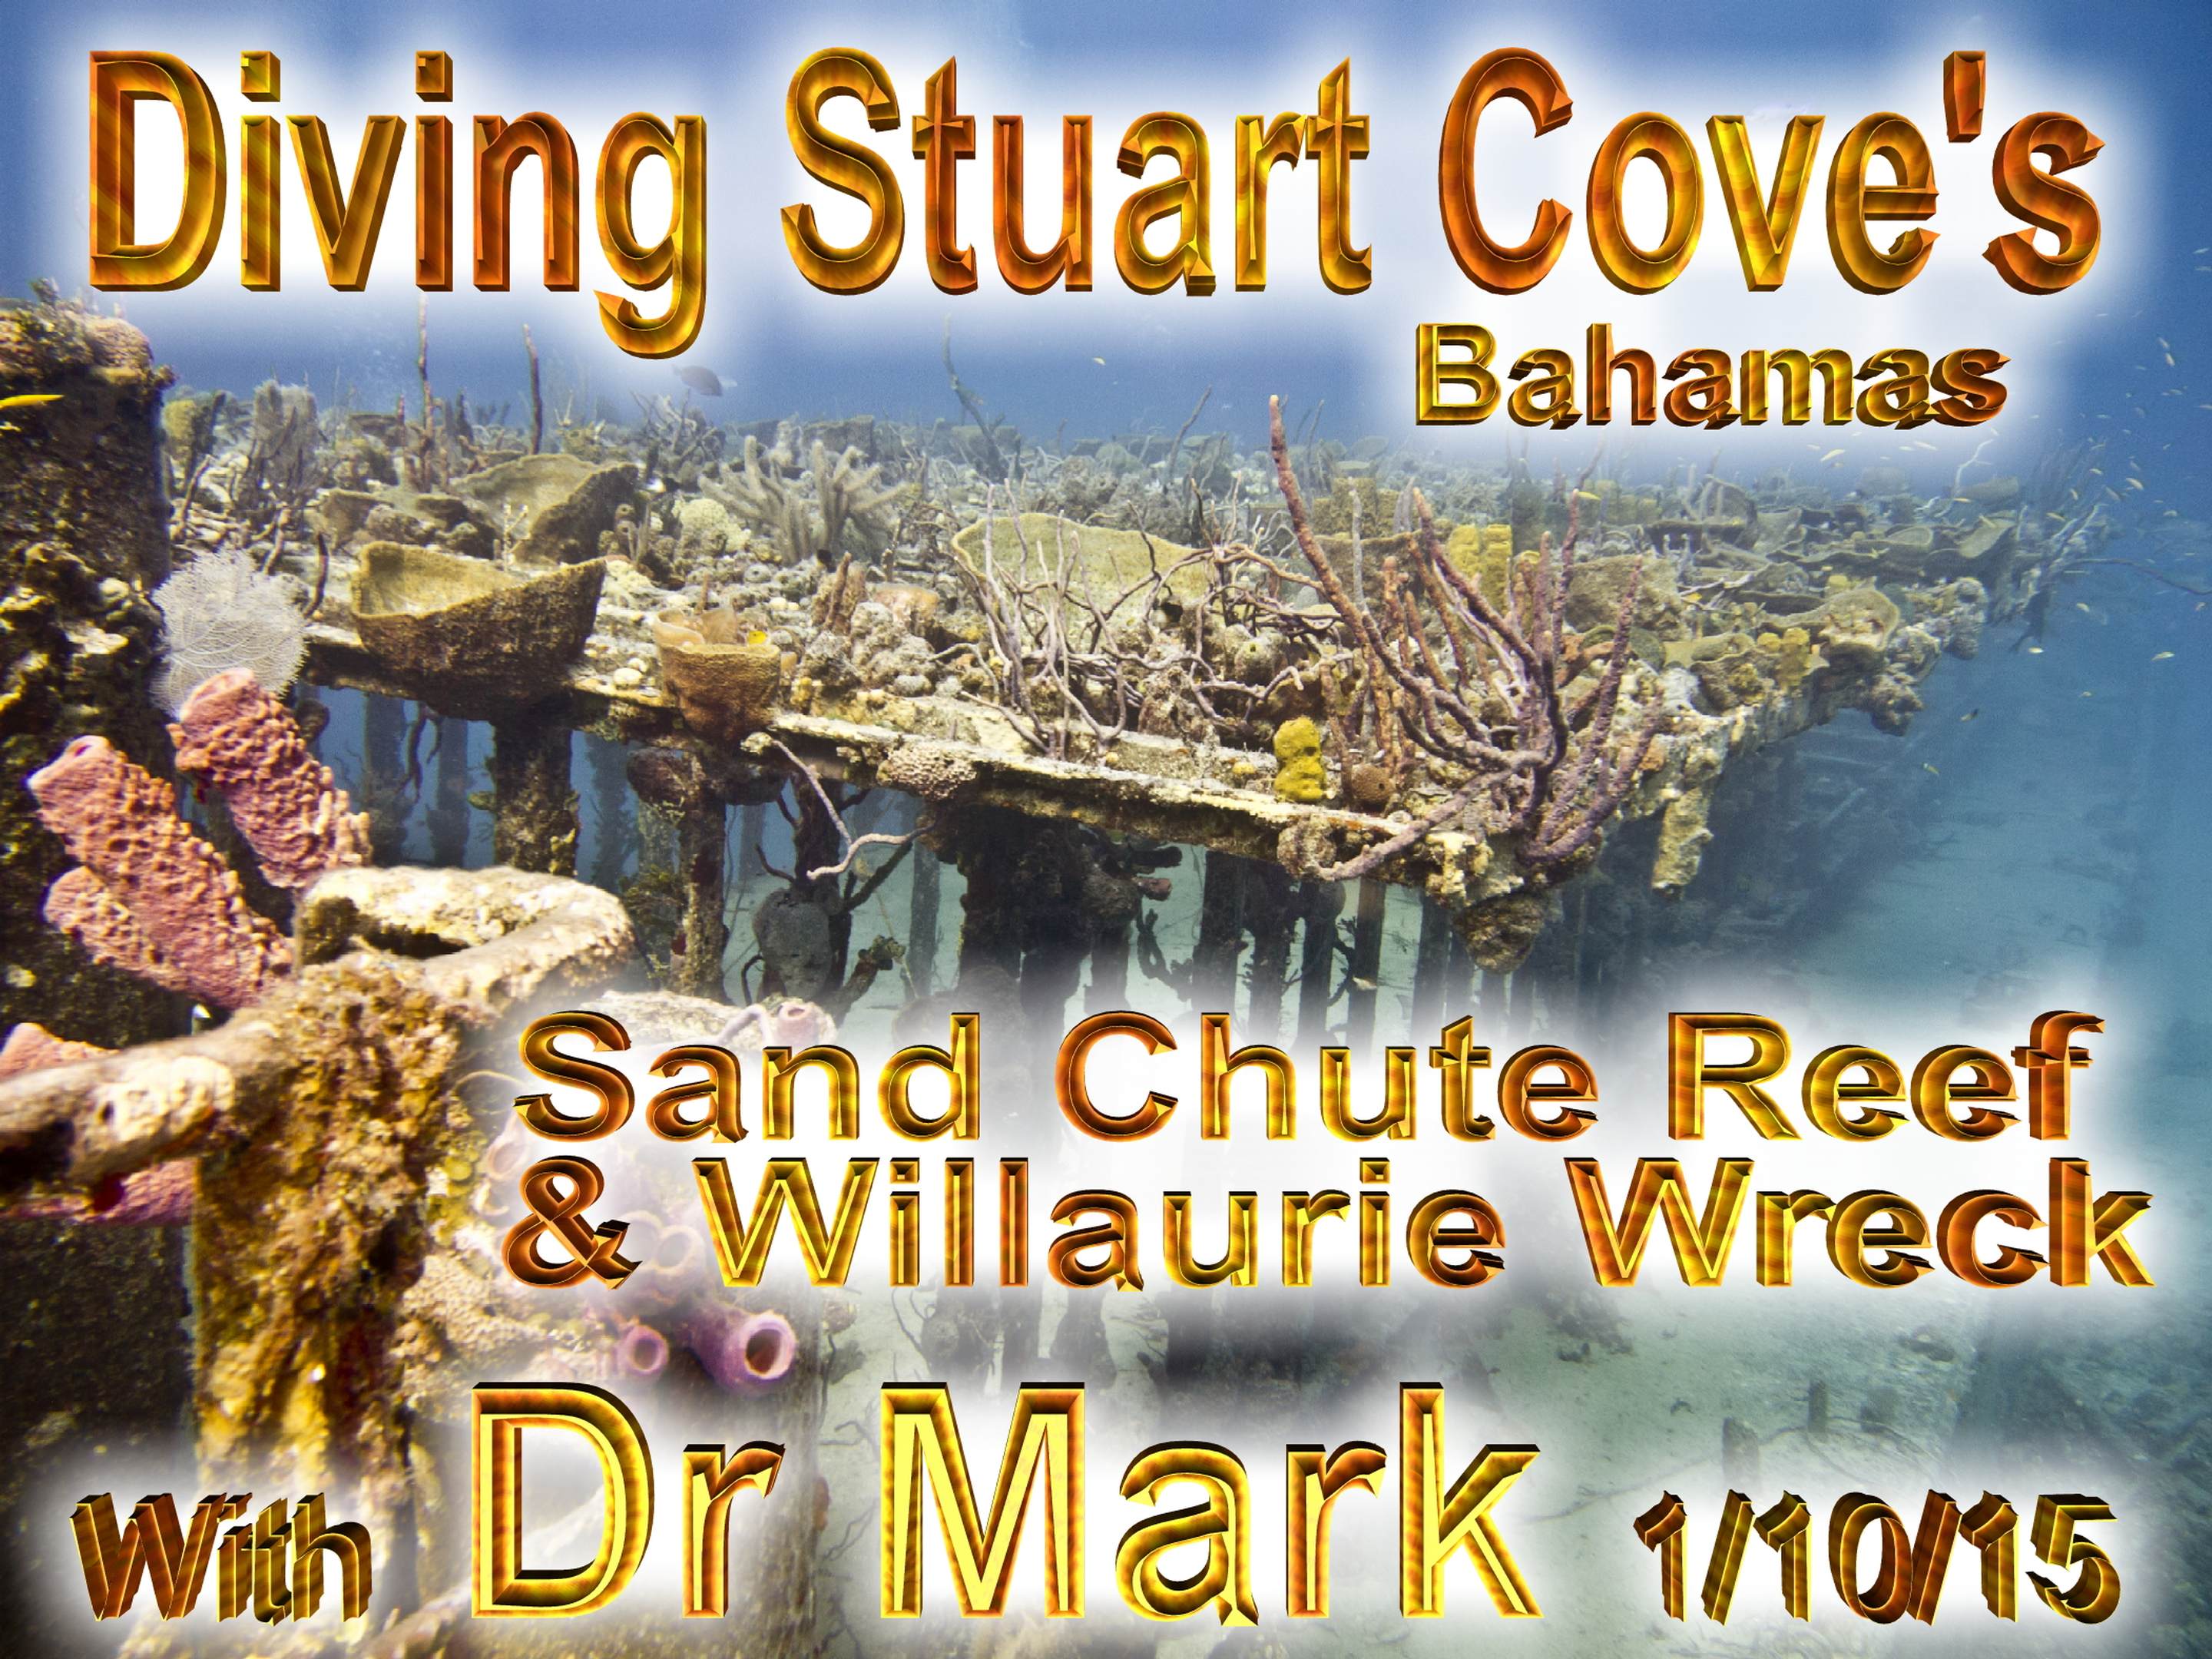 Stuart Coves Sand Chute Reef 1-10-15